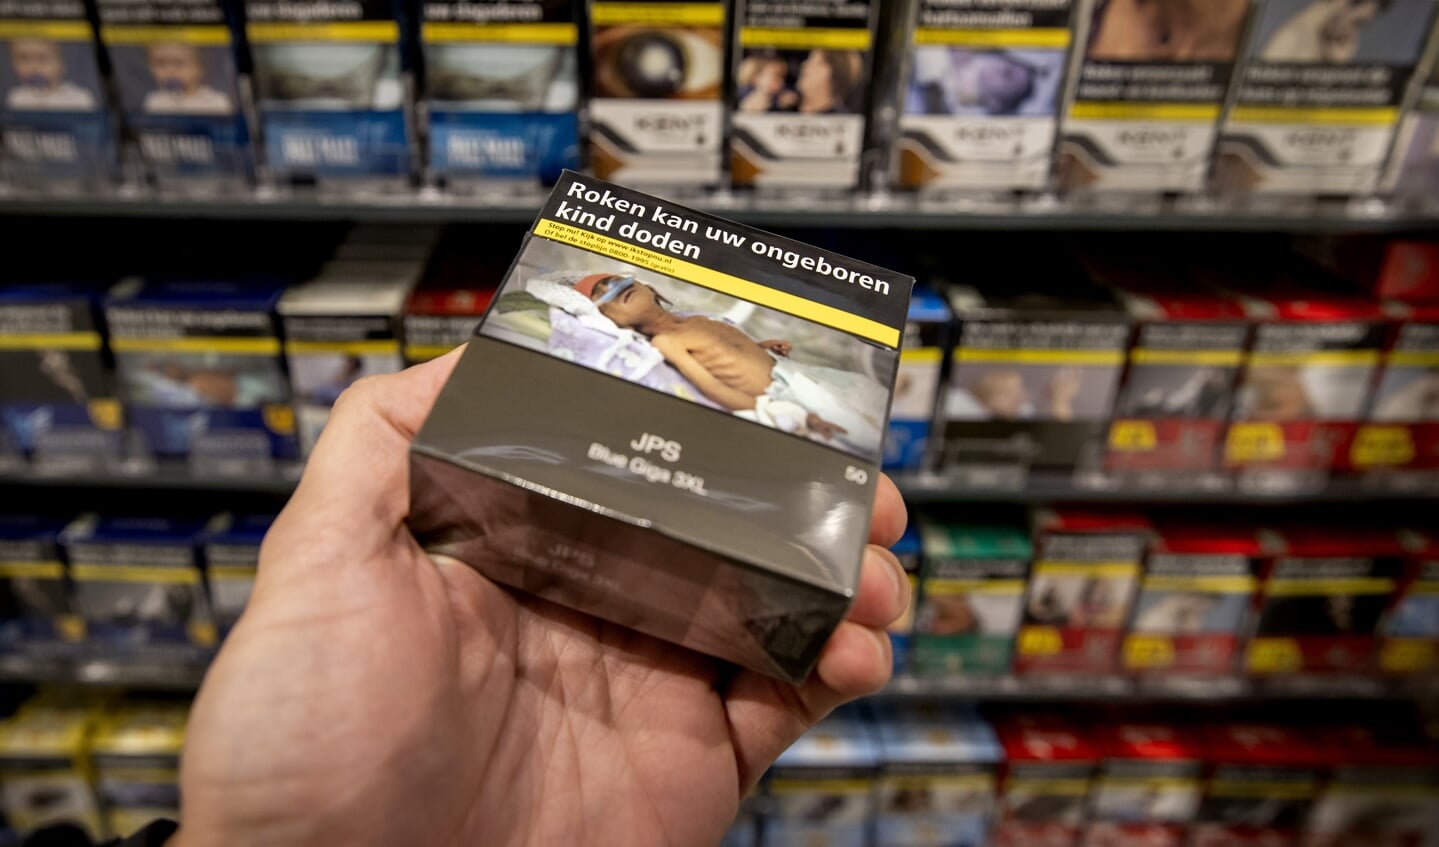 Roken is de belangrijkste oorzaak van ziekte en sterfte in Nederland.